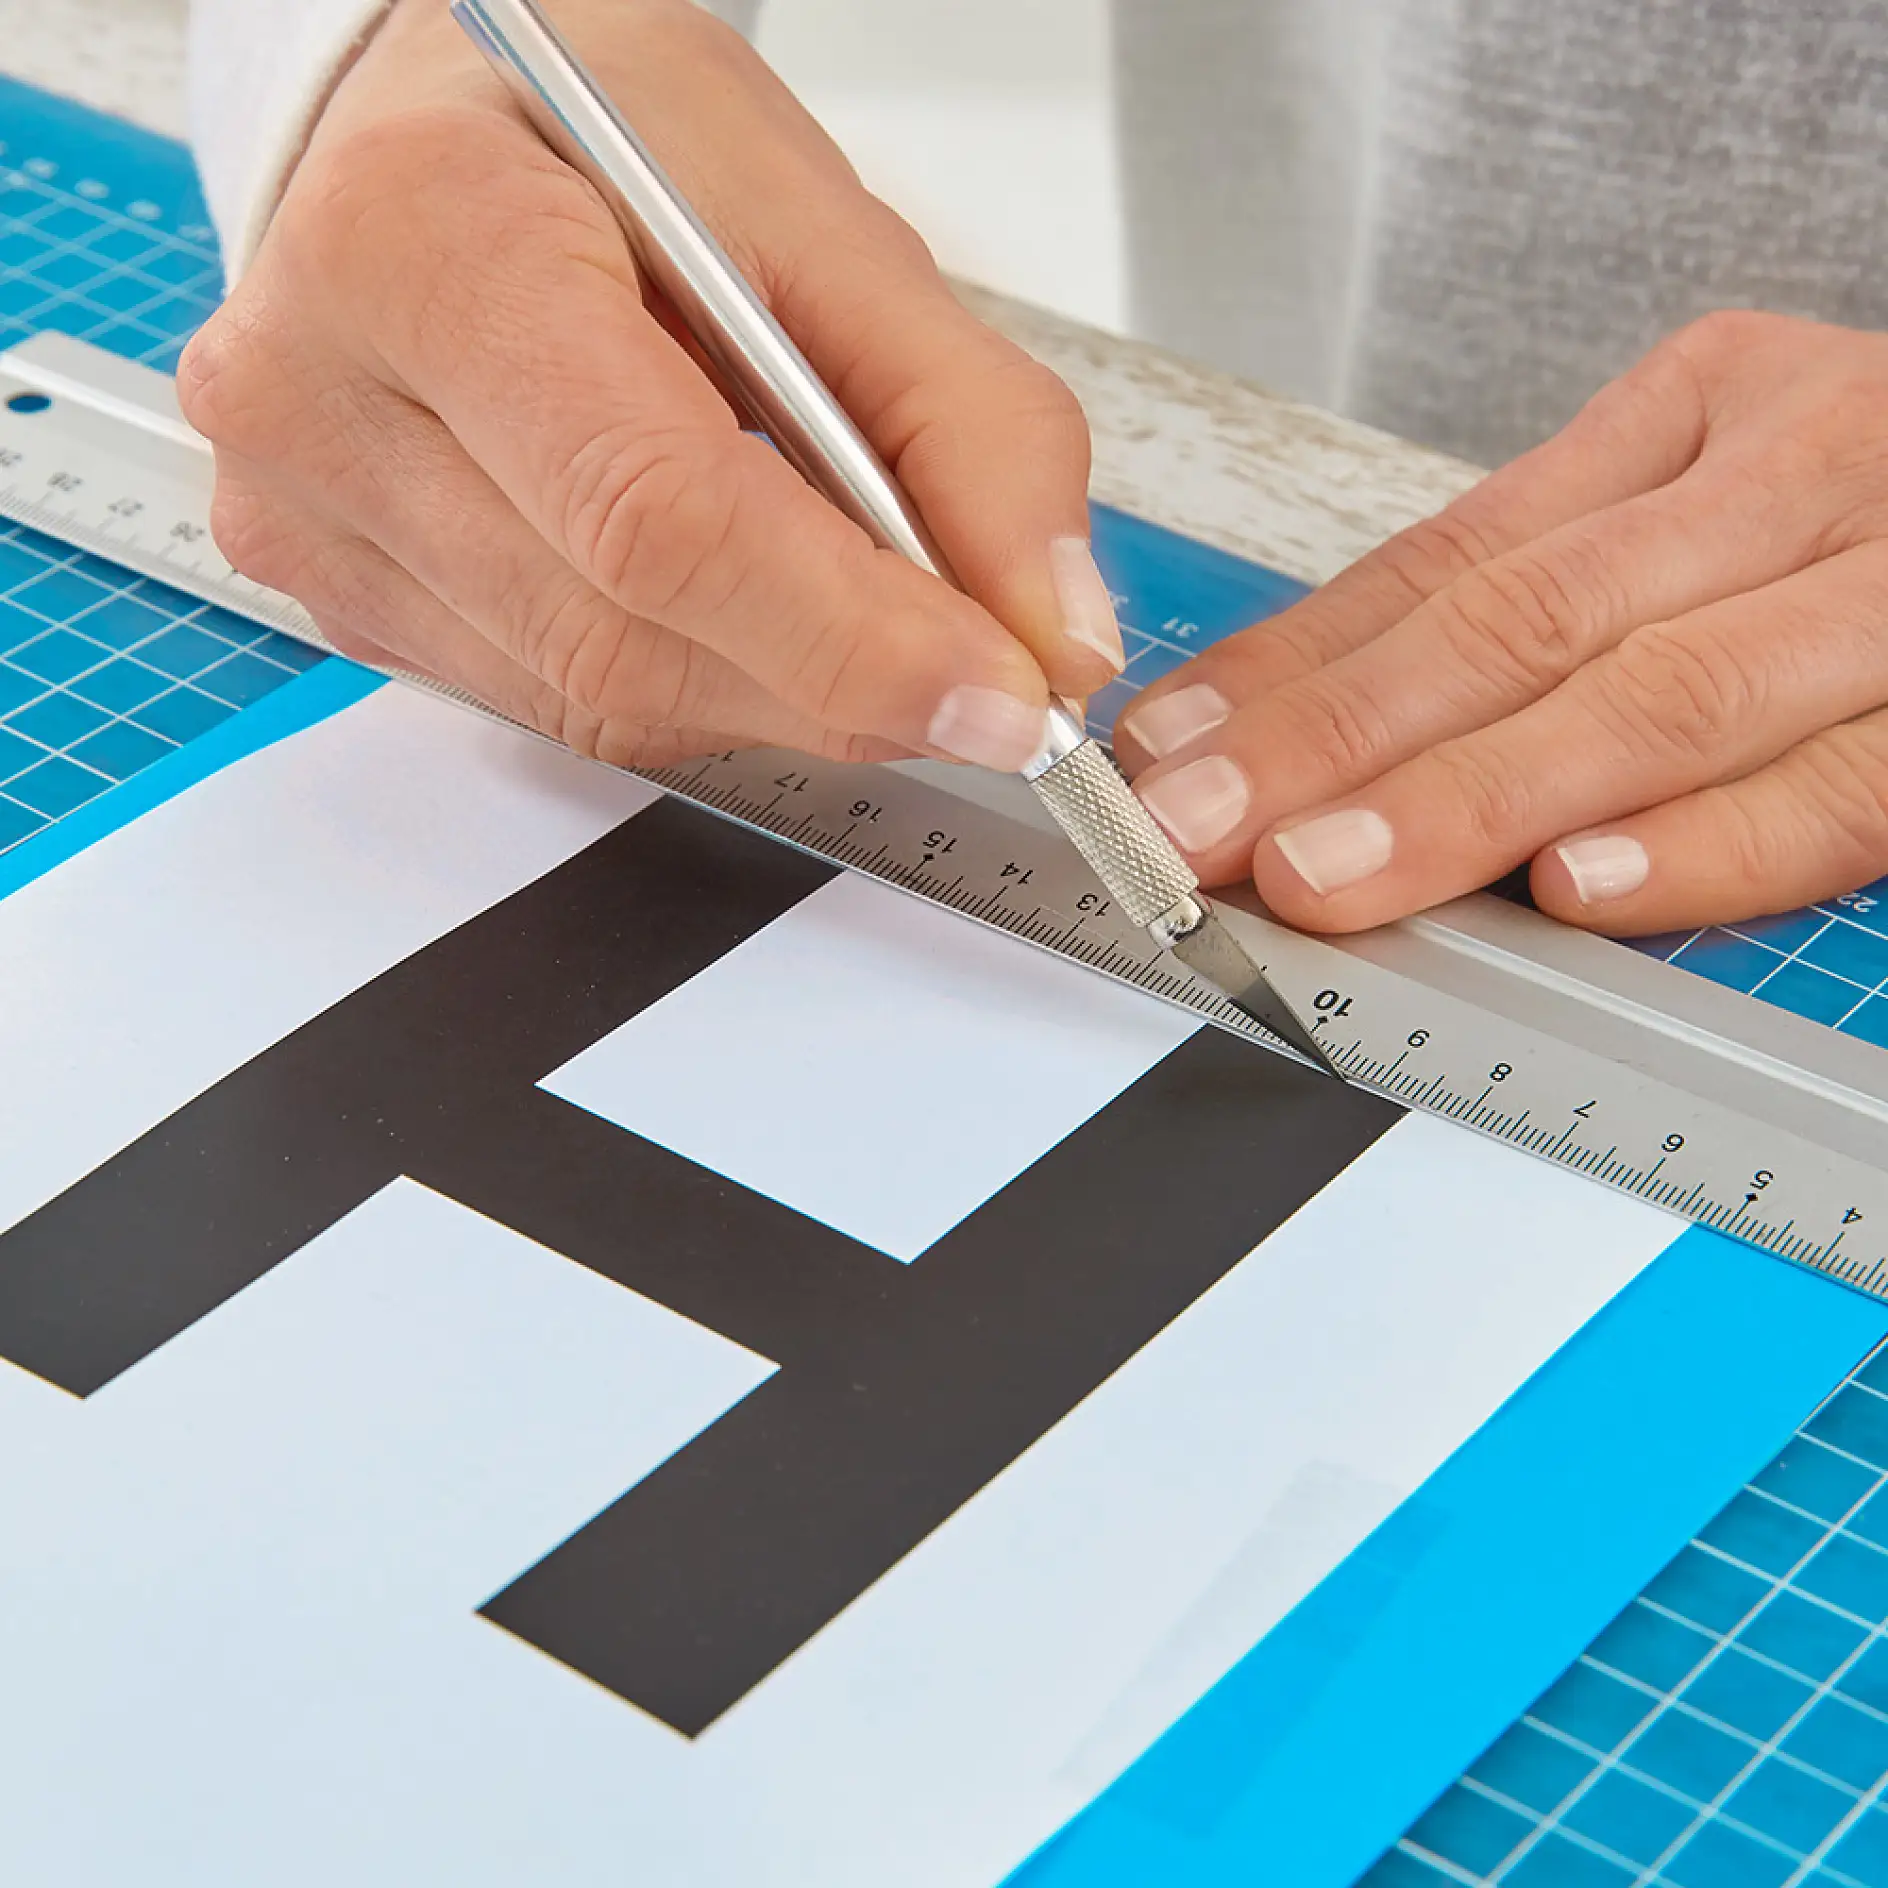 用刻刀切出字母形状。